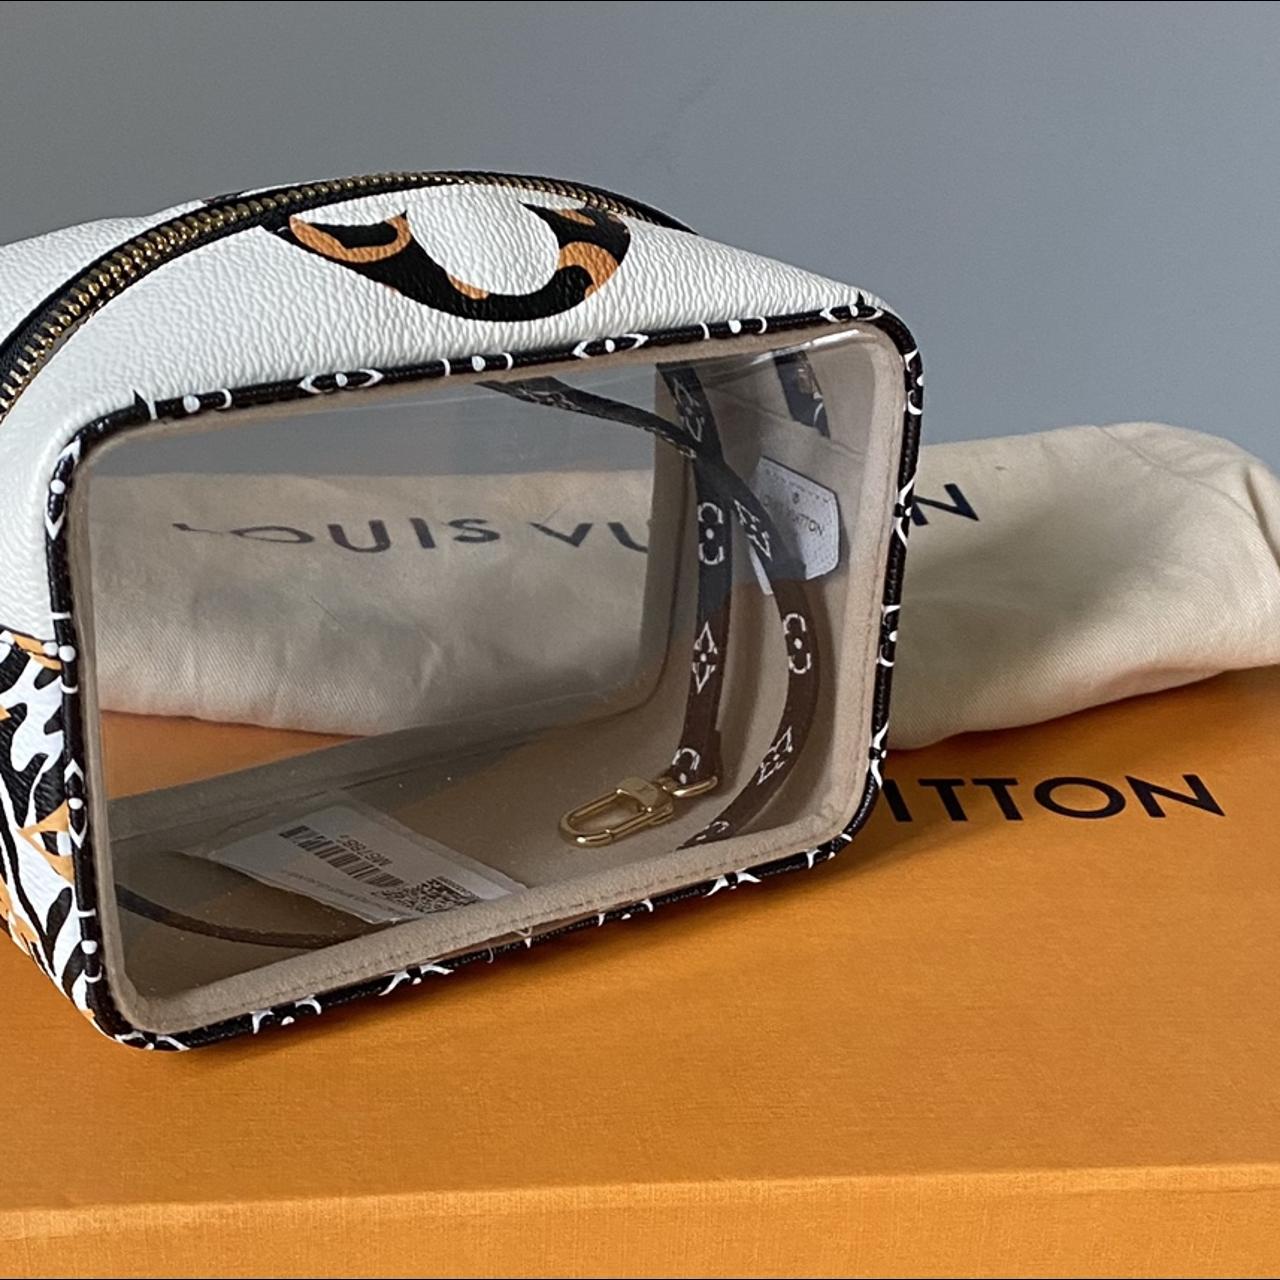 Brand new Jungle Louis Vuitton beach pouch. Very - Depop